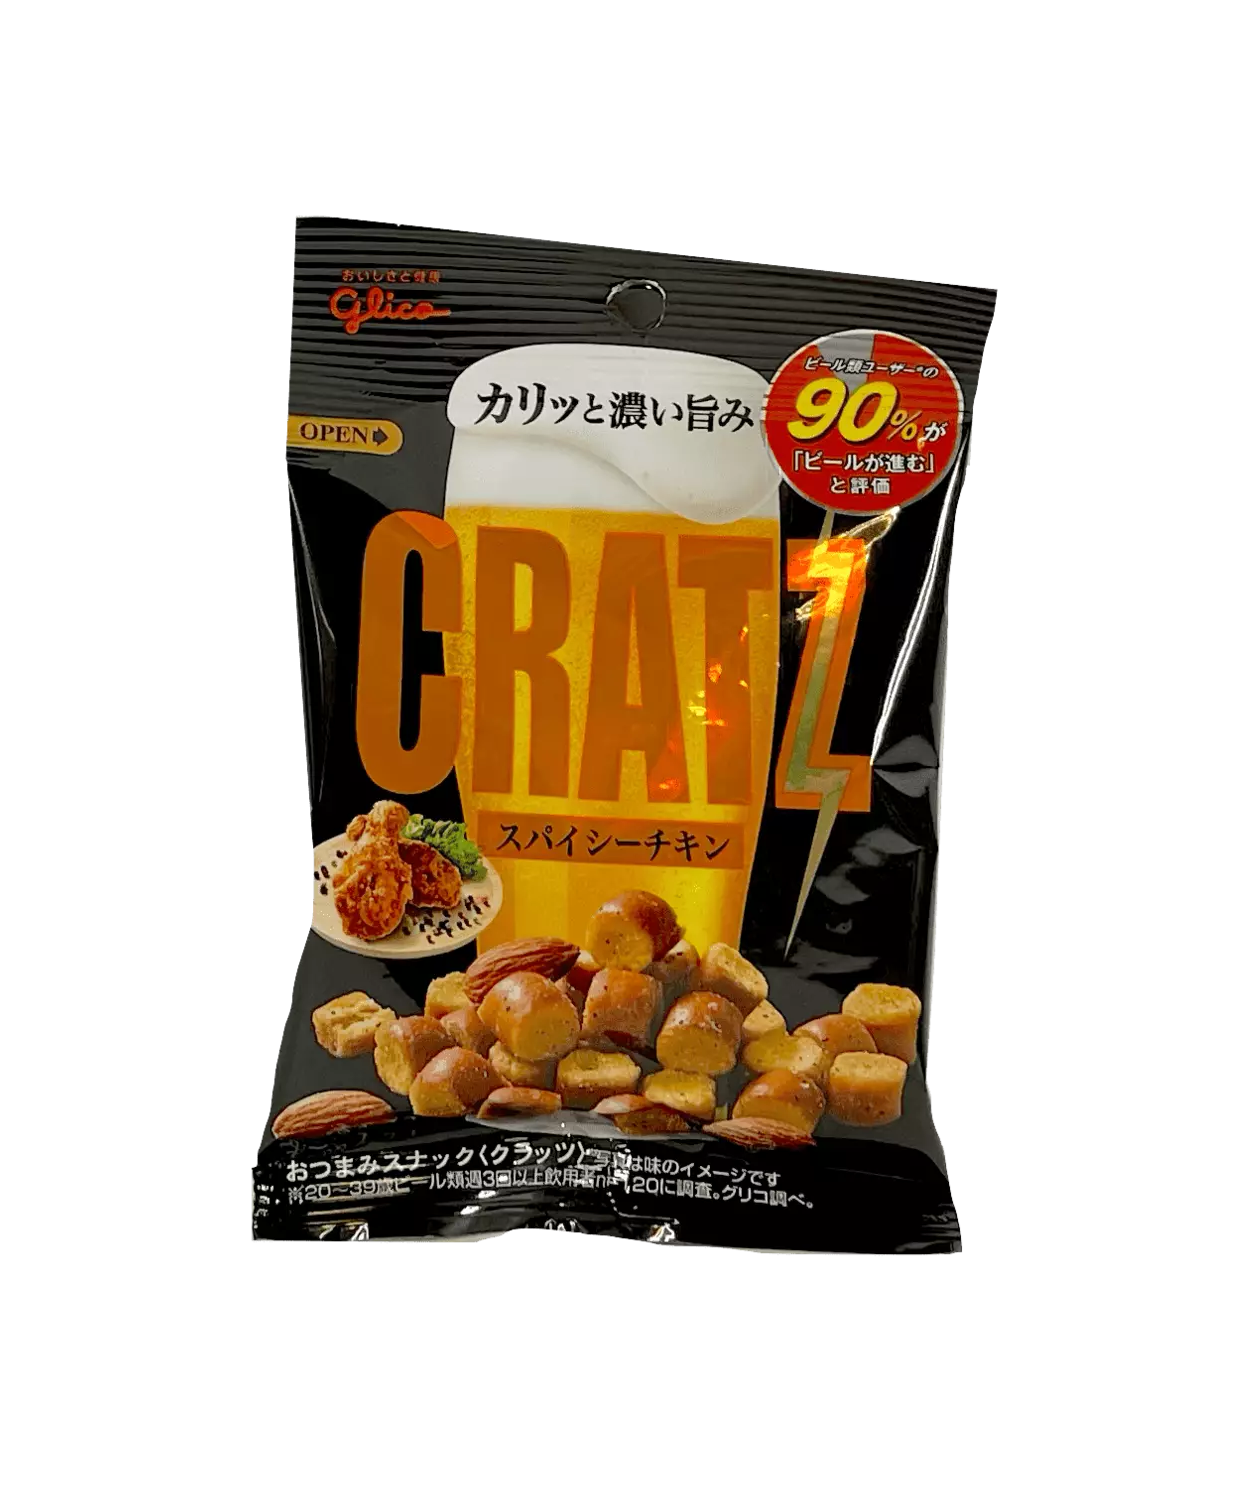 Cratz 香辣鸡味 42g Glico 日本